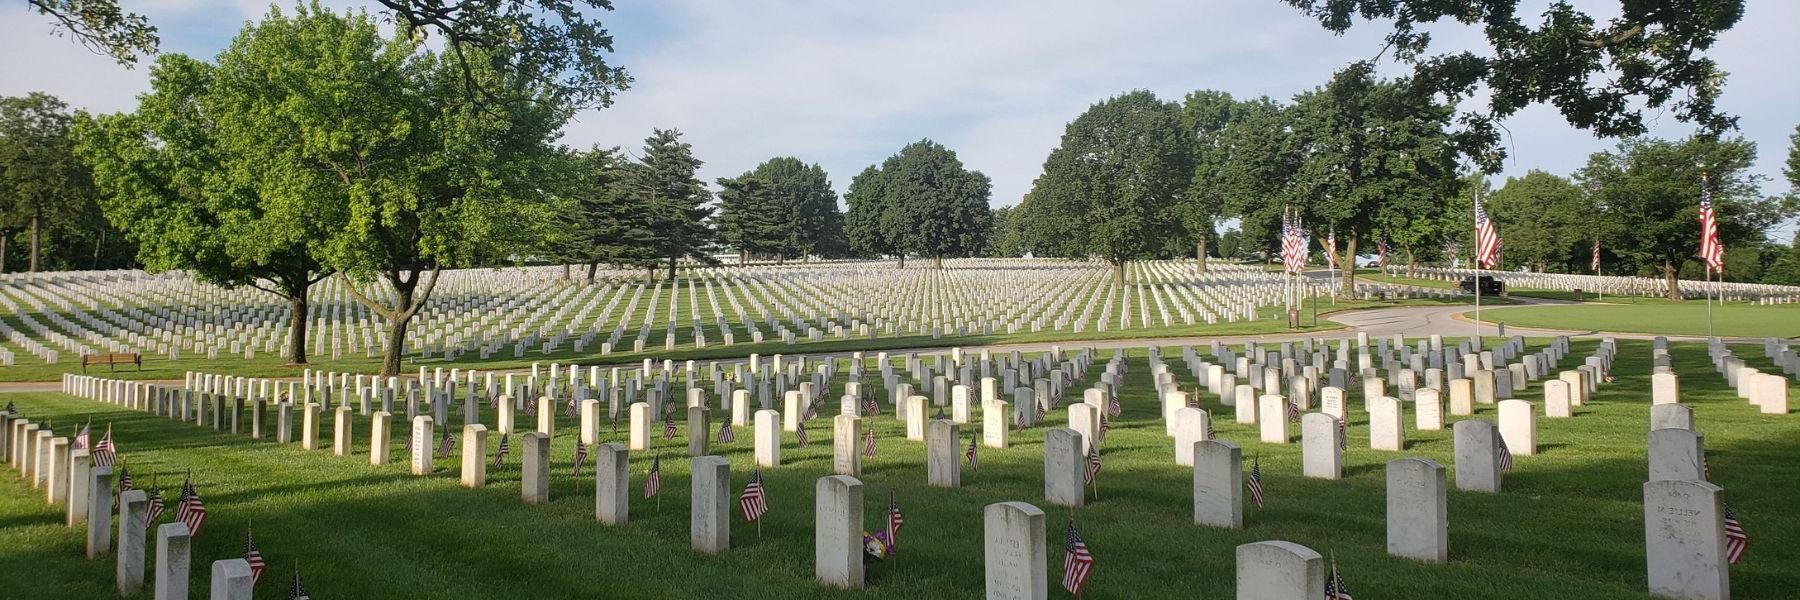 杰斐逊兵营国家公墓保存着十大最大的网络彩票平台斯在《美国梦》中扮演的迷人角色.S. 军事历史.